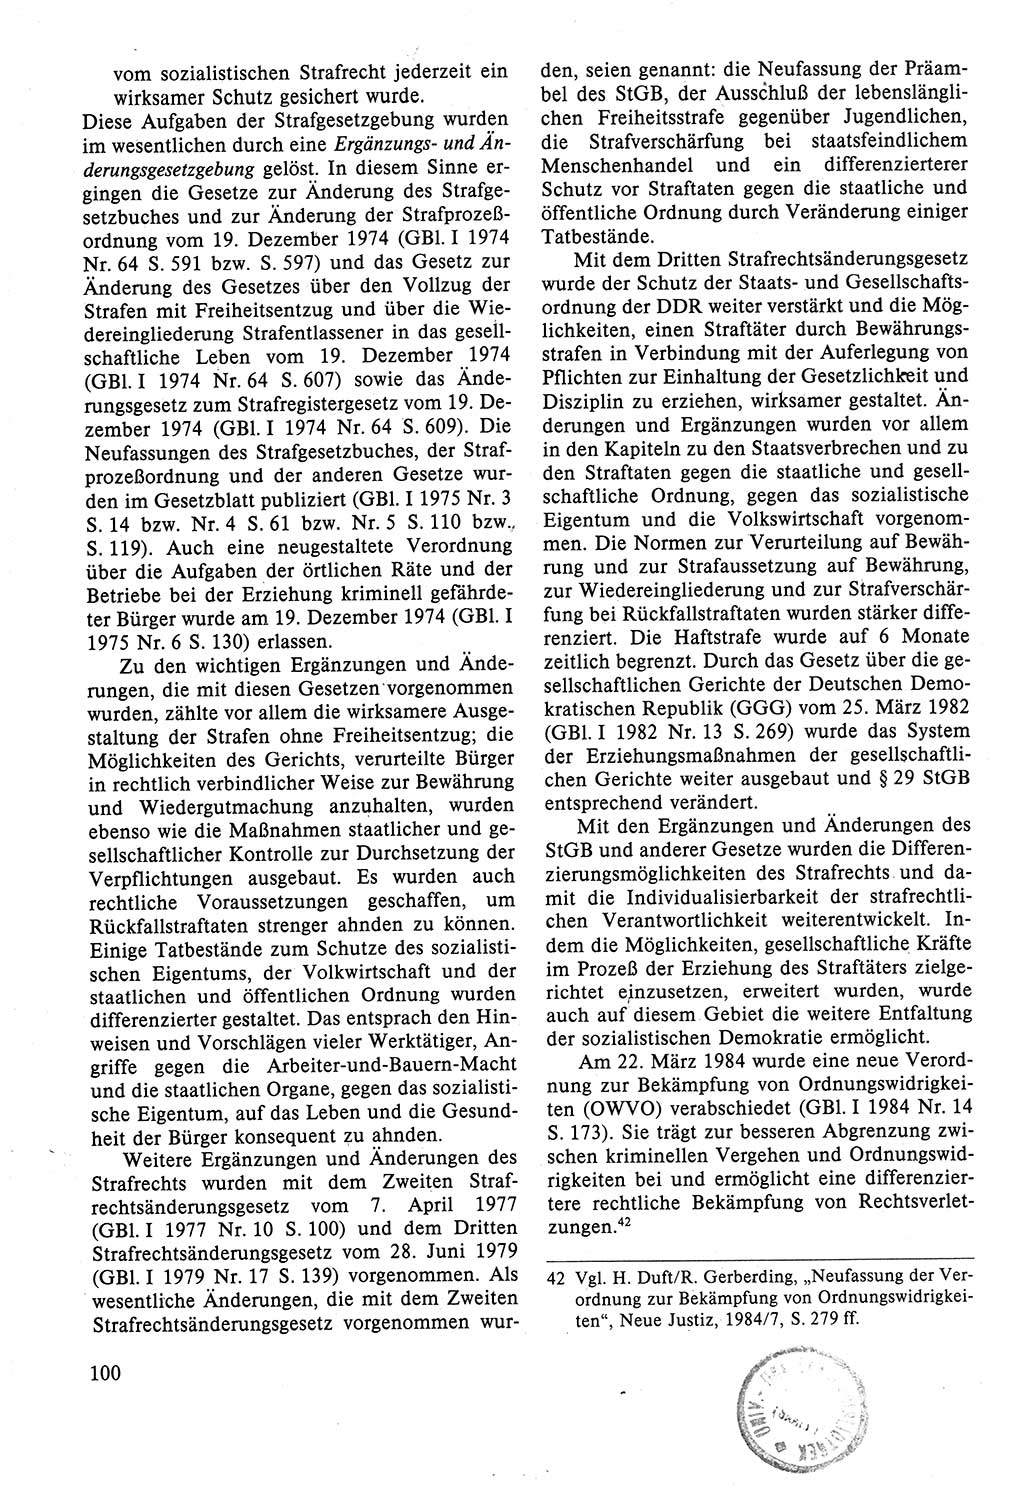 Strafrecht der DDR (Deutsche Demokratische Republik), Lehrbuch 1988, Seite 100 (Strafr. DDR Lb. 1988, S. 100)